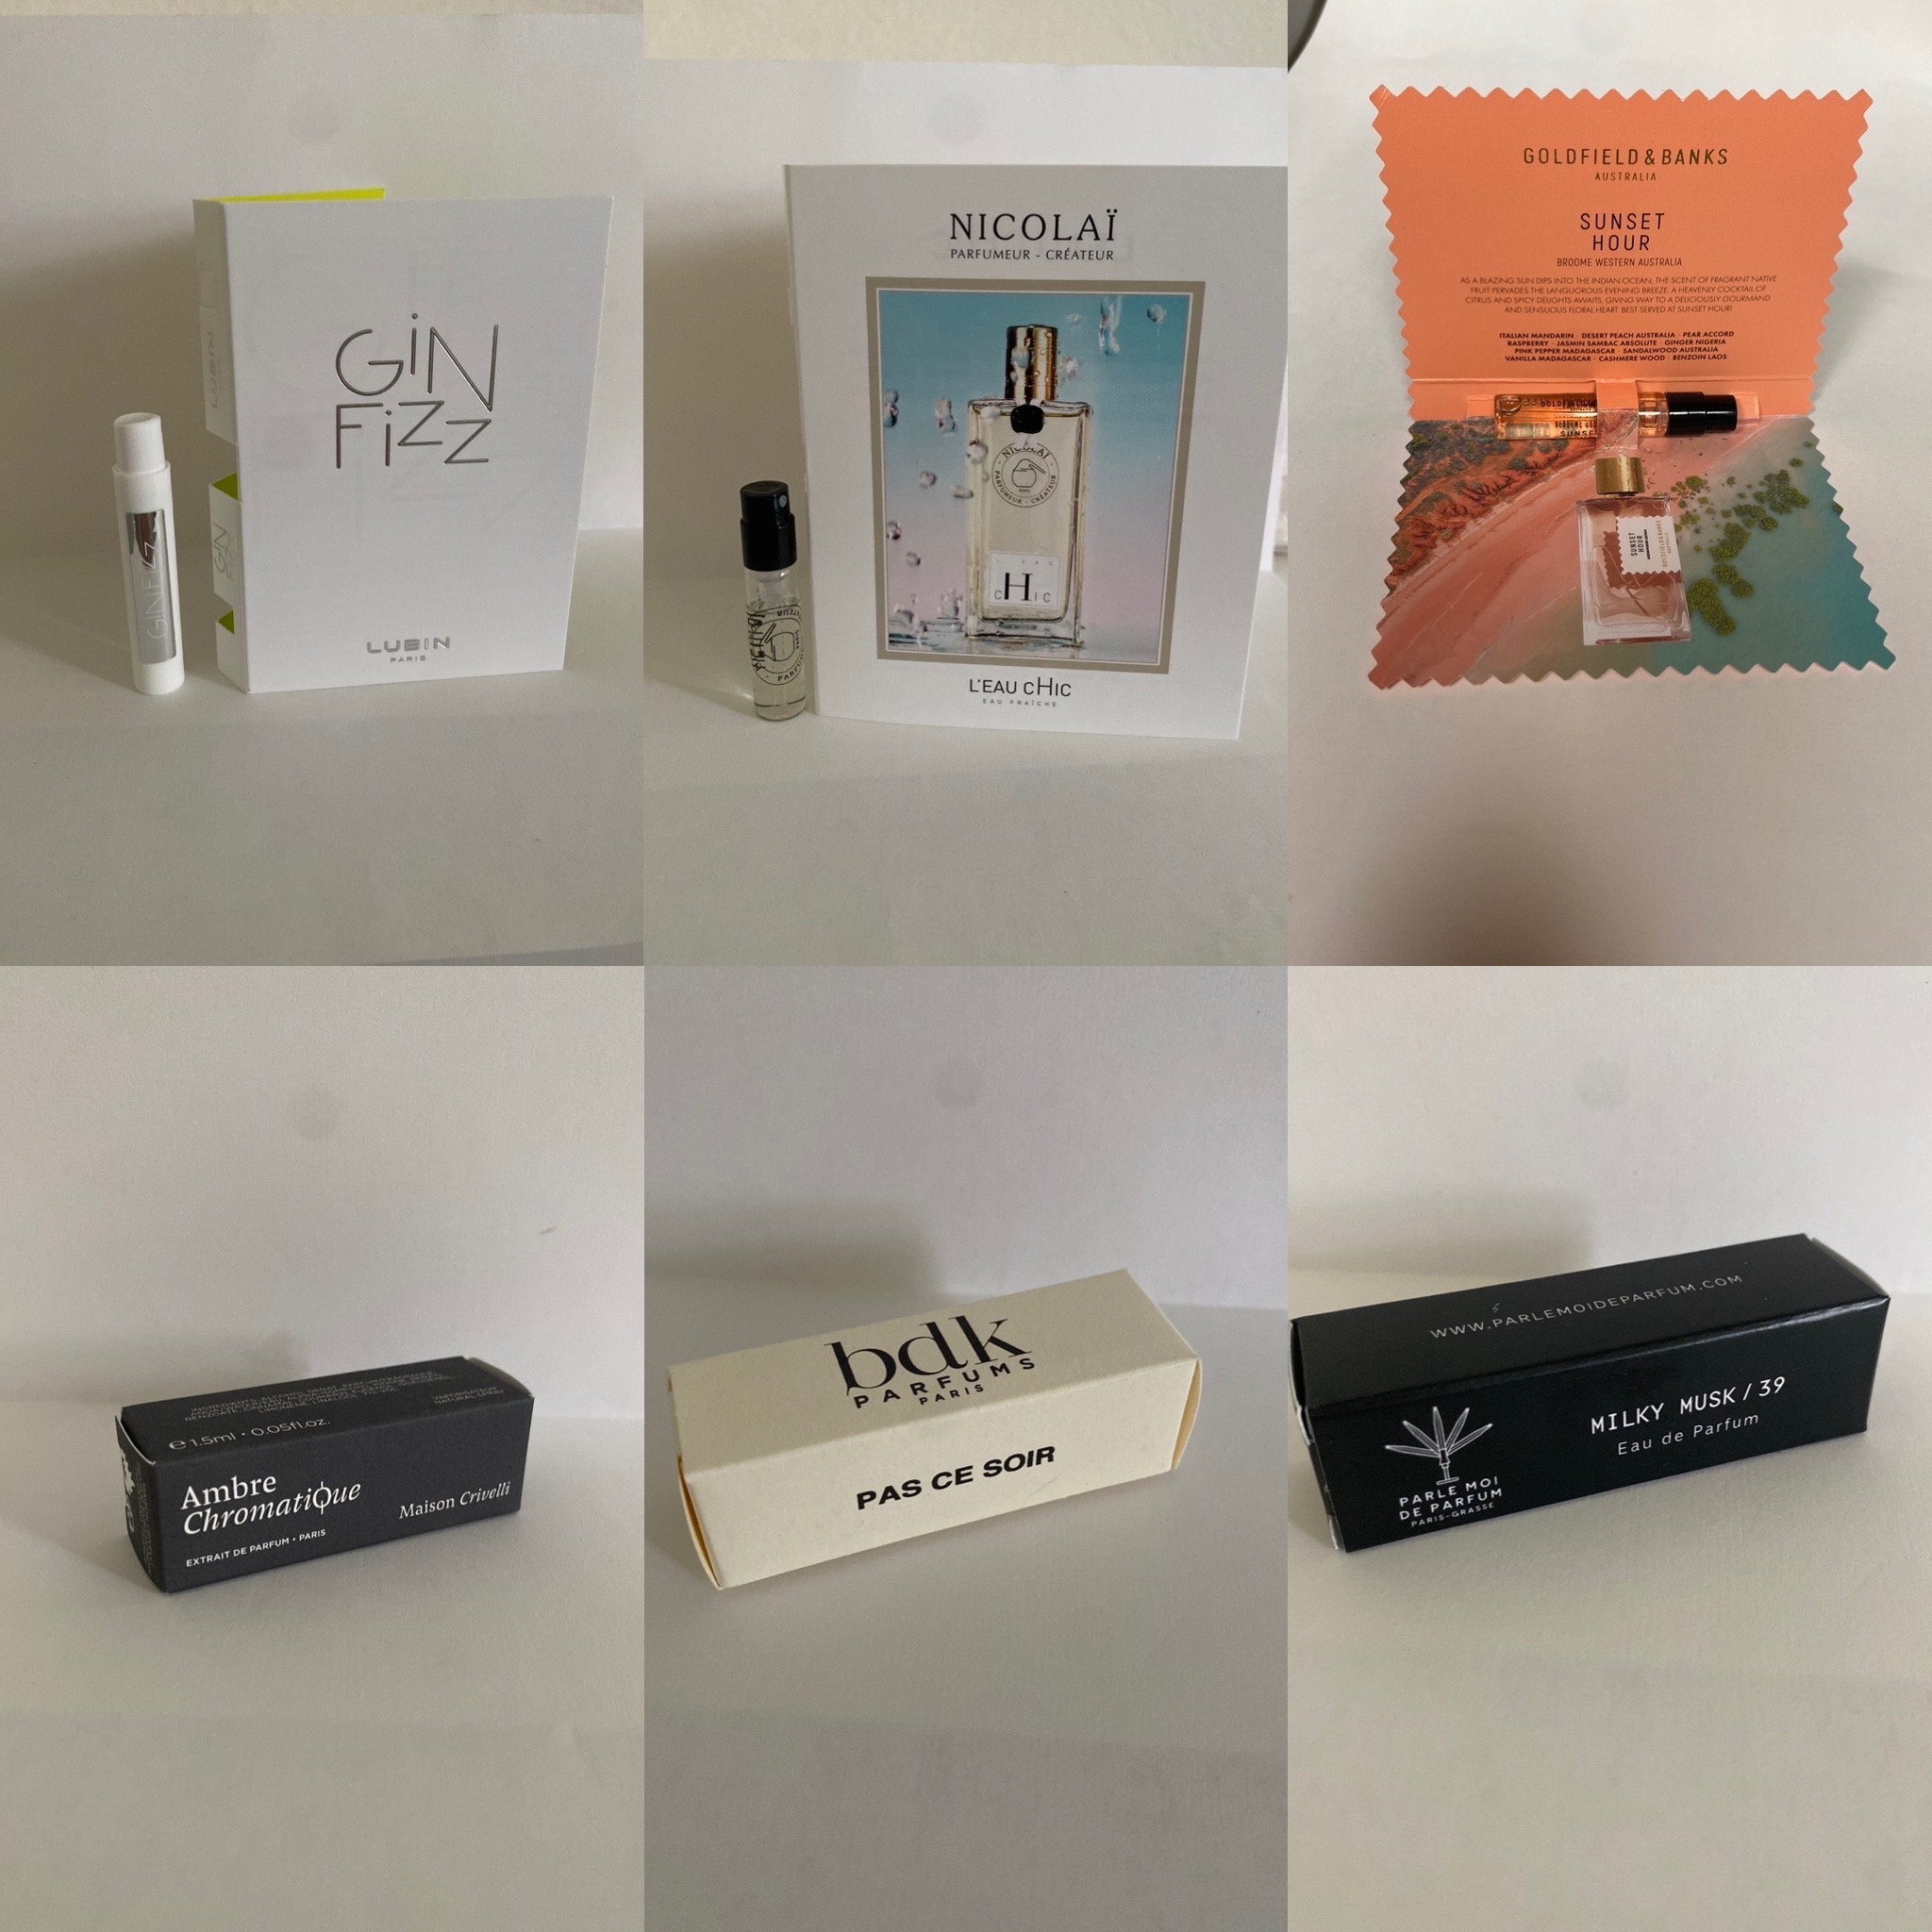 Louis Vuitton Miniatures Set Ombre Nomade 4 x 7.5 ml Gift Set Fragrances  3701002701366 - Fragrances & Beauty, Ombre Nomade - Jomashop